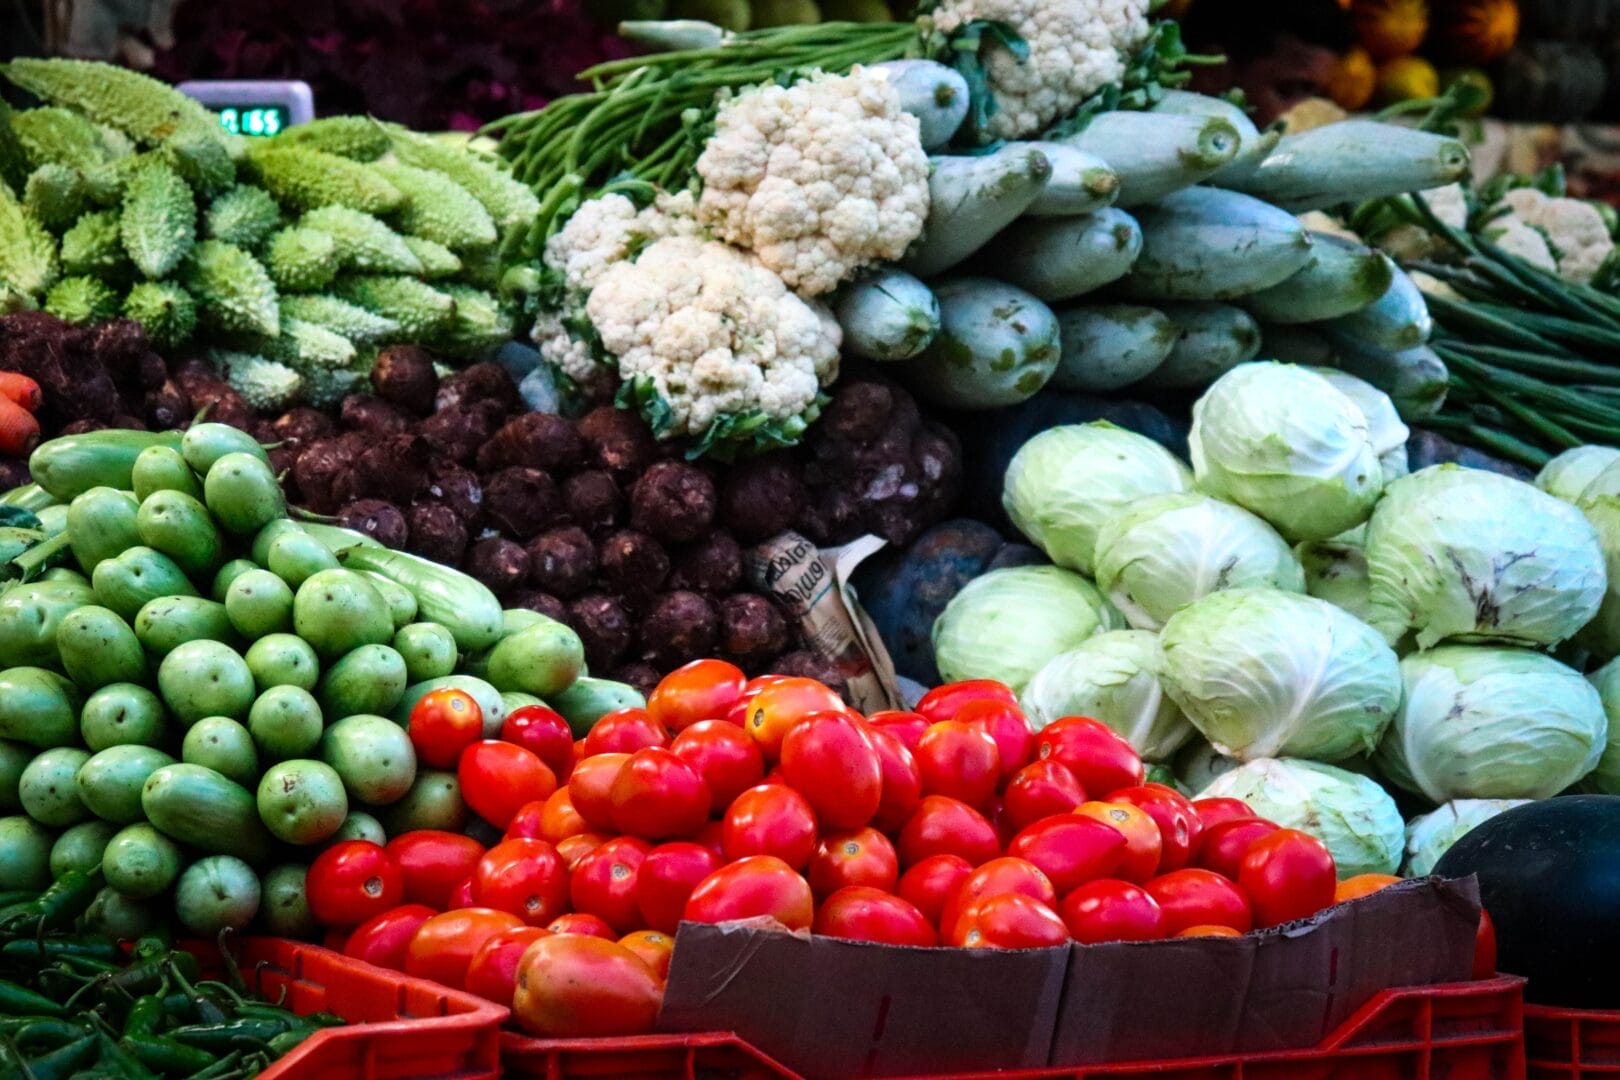 vegetables at a market